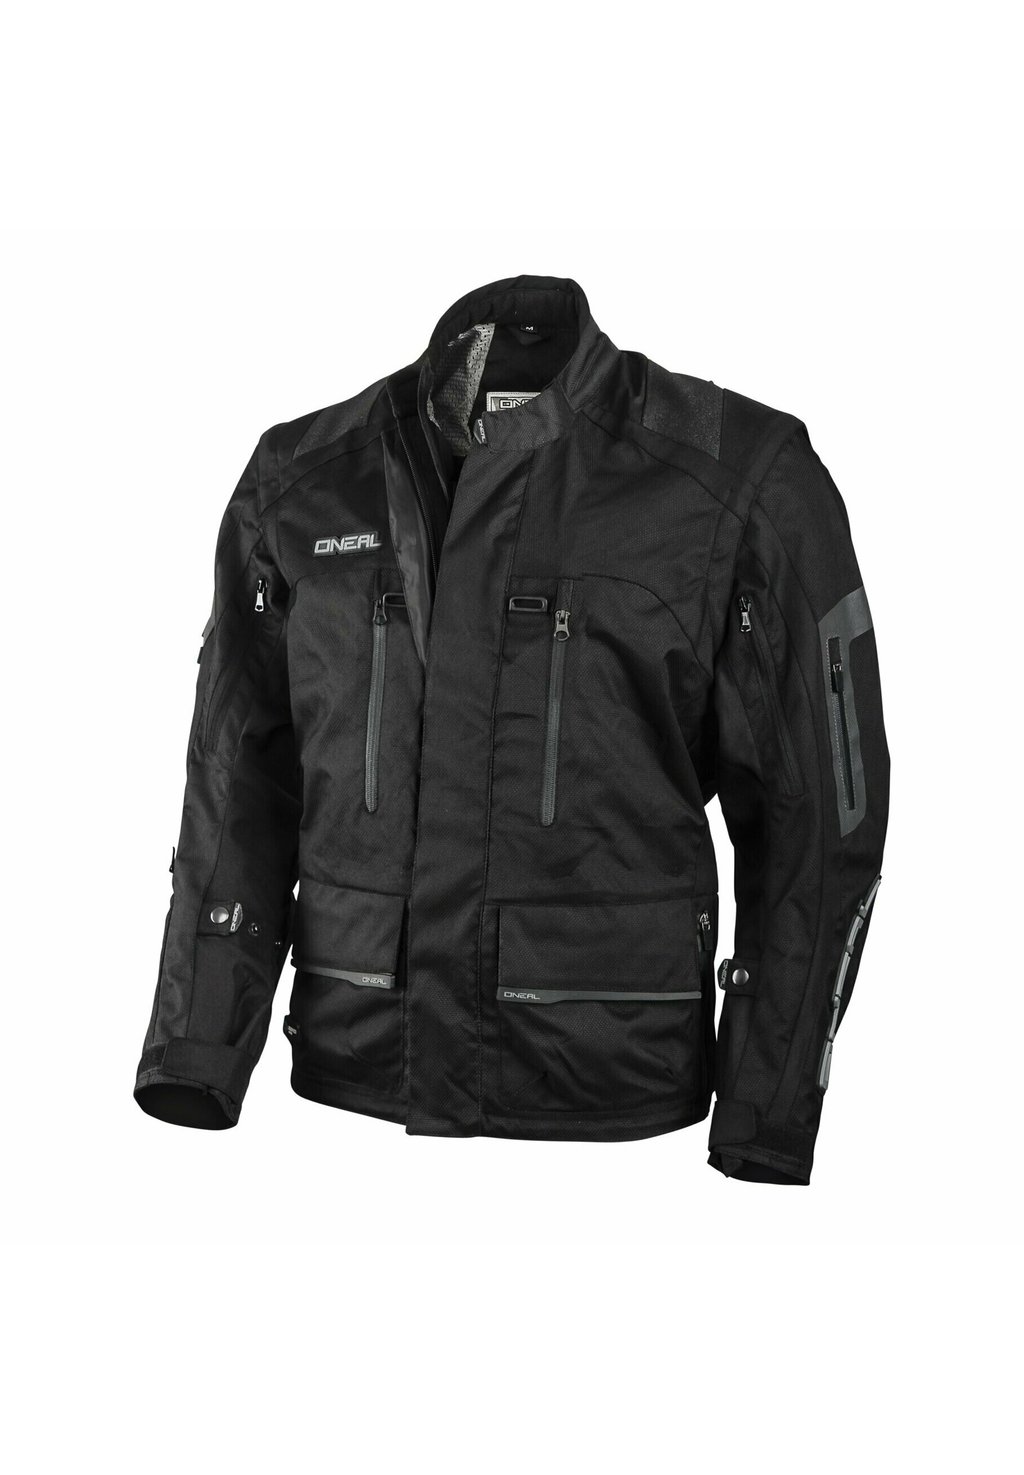 Куртка для активного отдыха BAJA O'Neal, цвет black куртка для активного отдыха shellwie ragwear цвет black